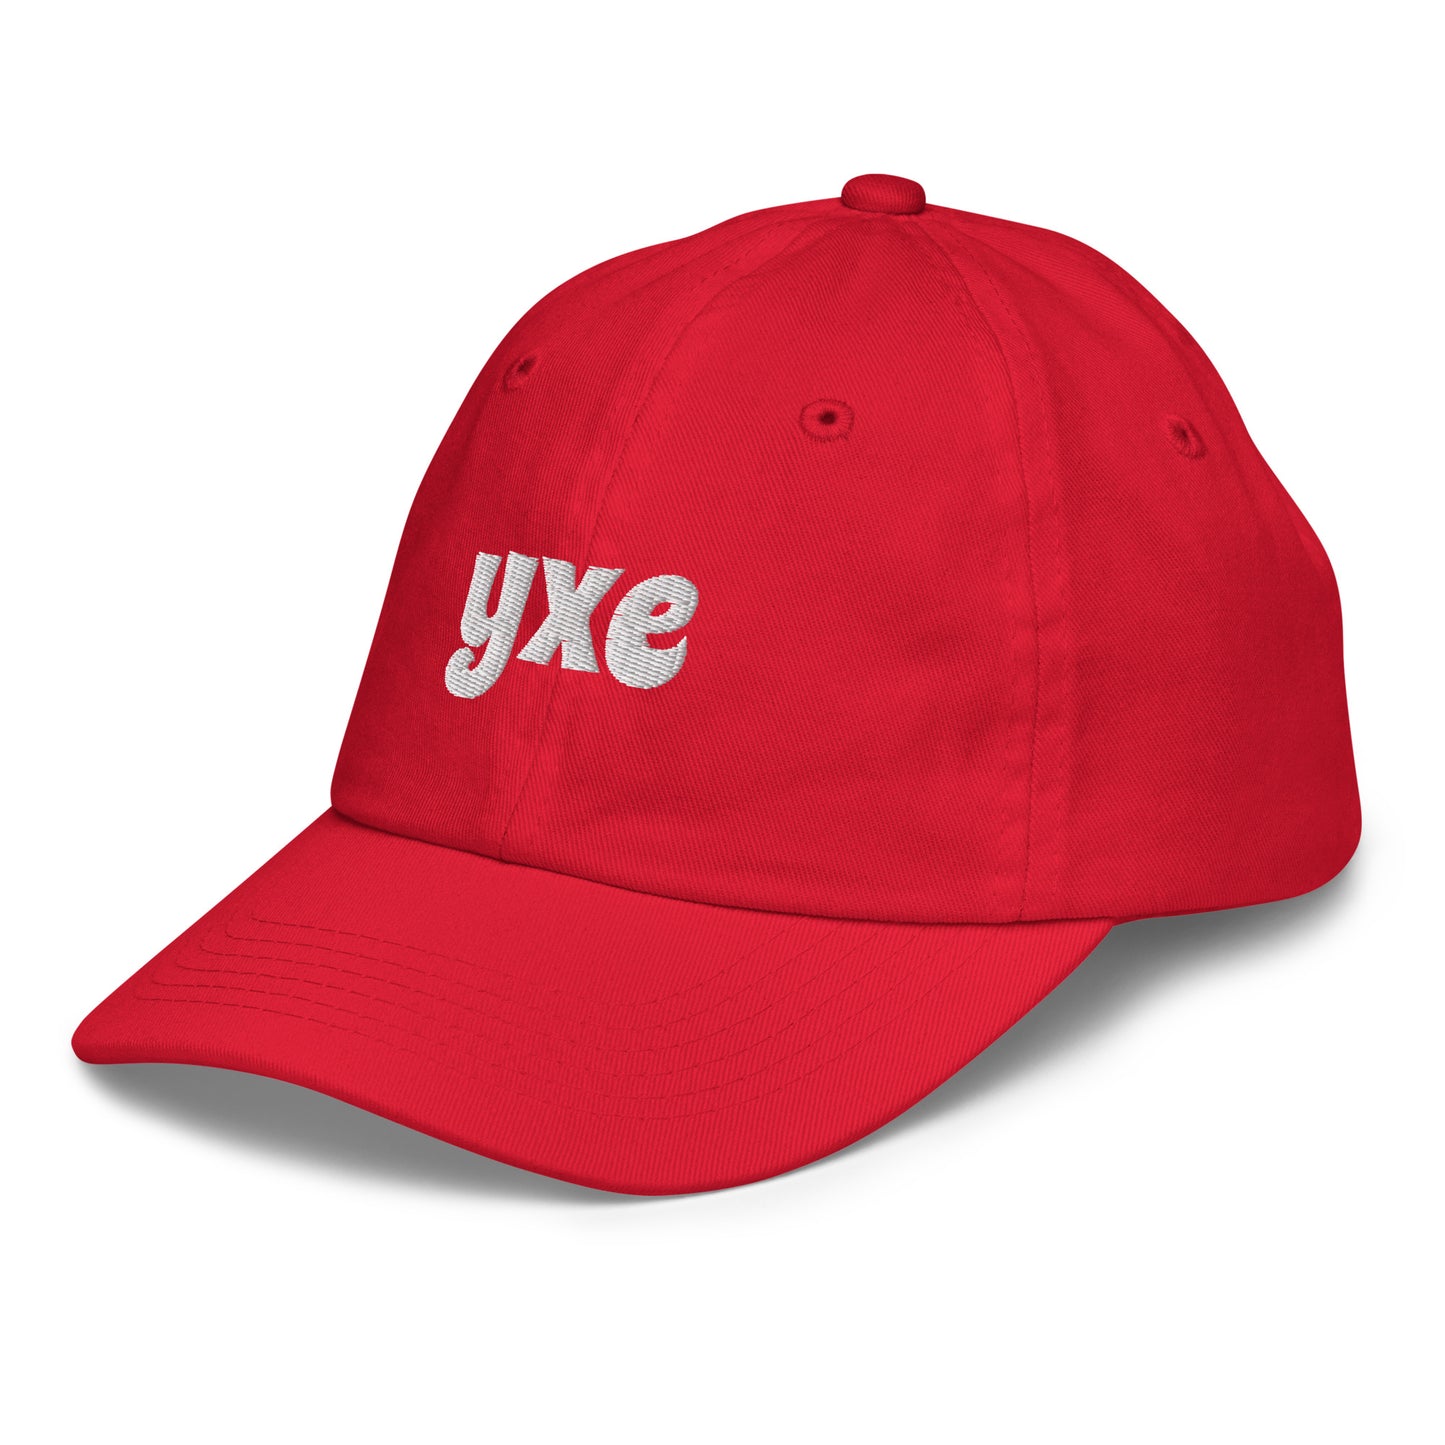 Groovy Kid's Baseball Cap - White • YXE Saskatoon • YHM Designs - Image 14